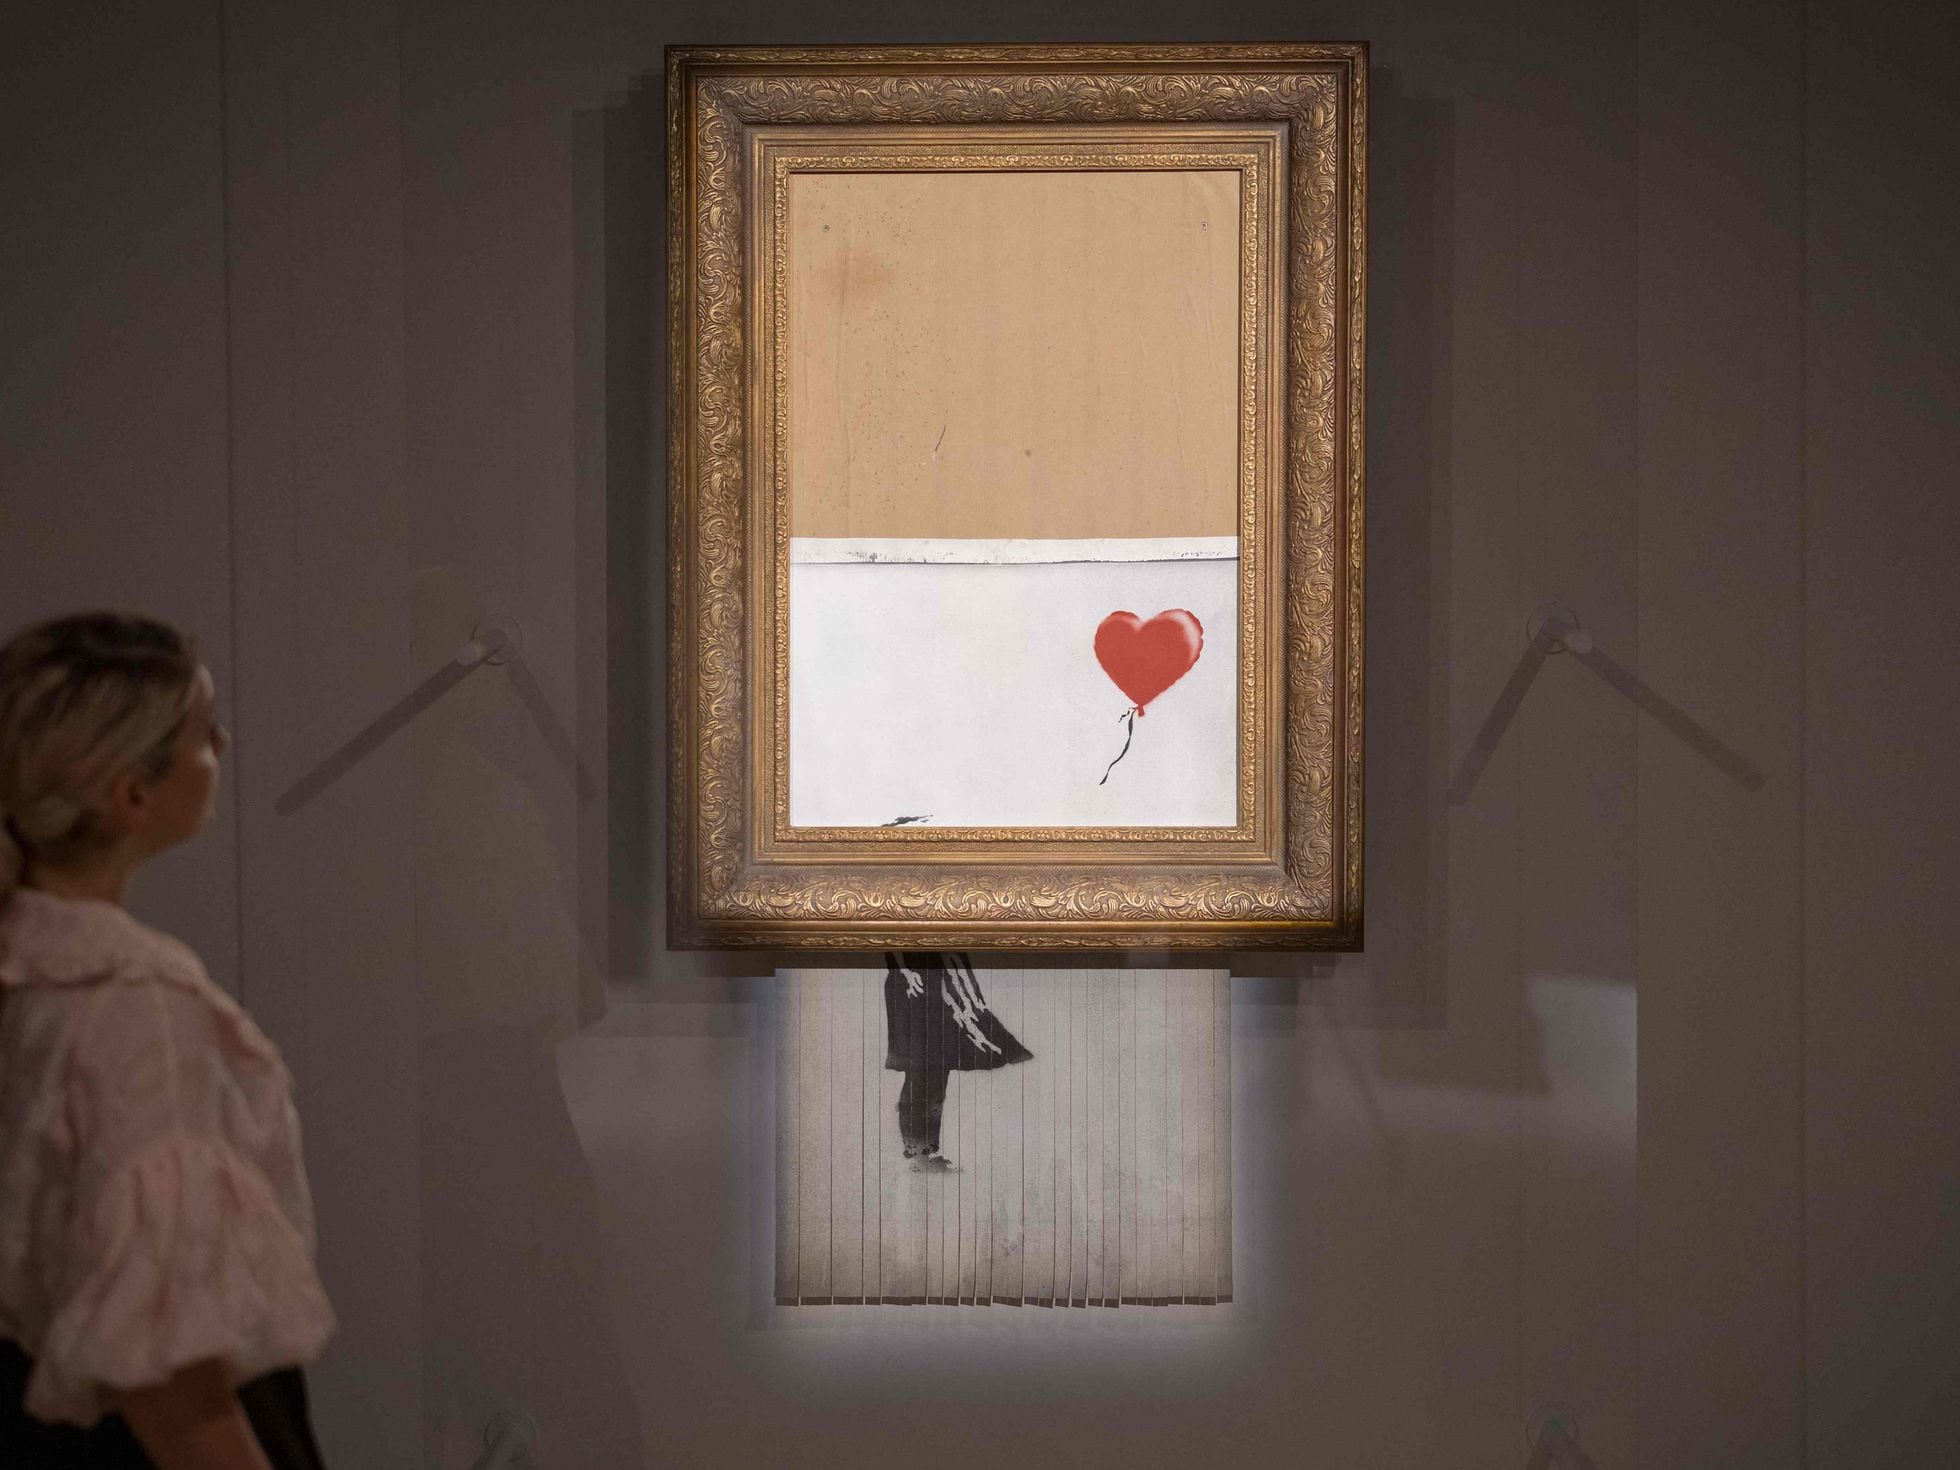 La obra de Banksy que se autodestruyó tras ser subastada se revende por millones de euros | Cultura | EL PAÍS